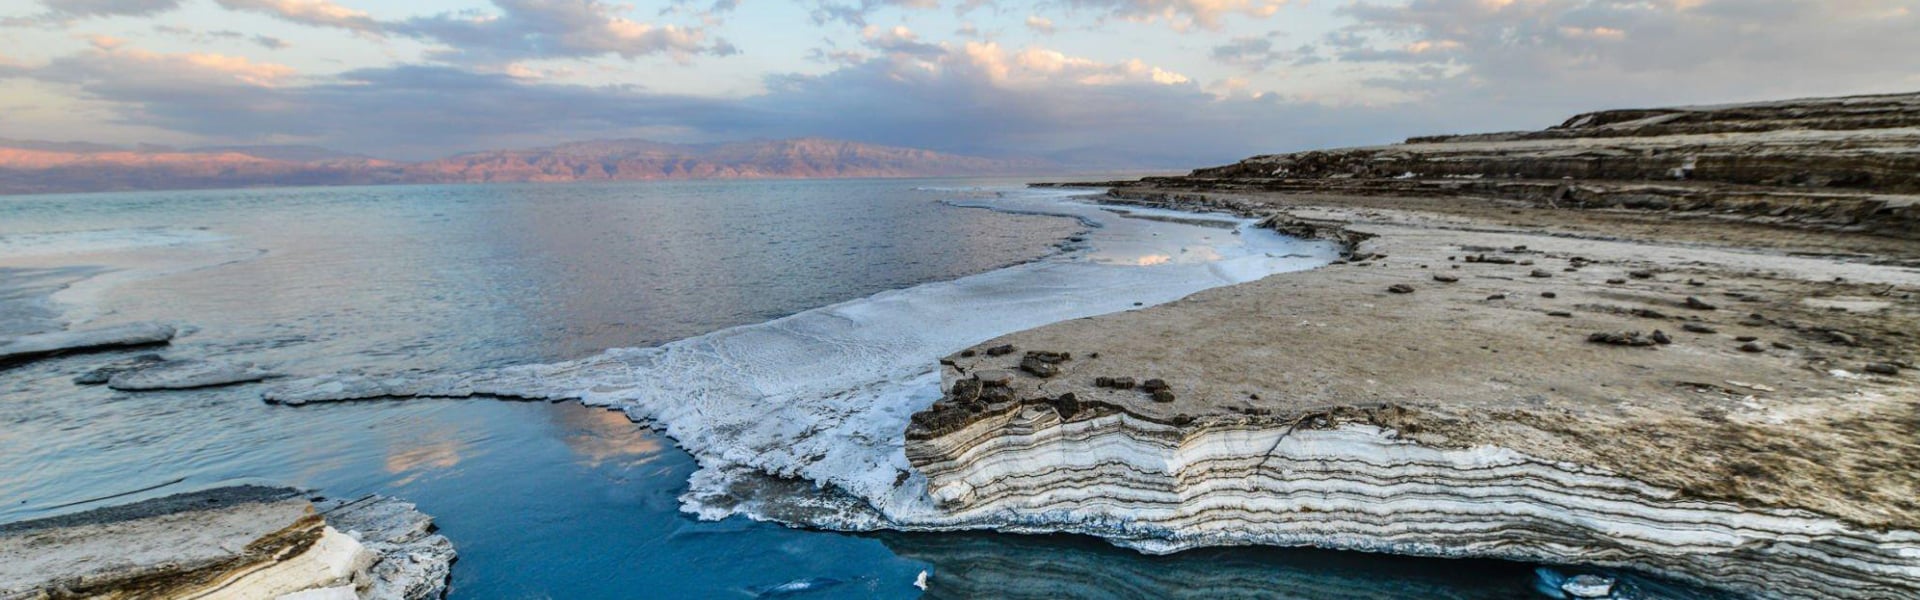 The Dead Sea Travel Guide